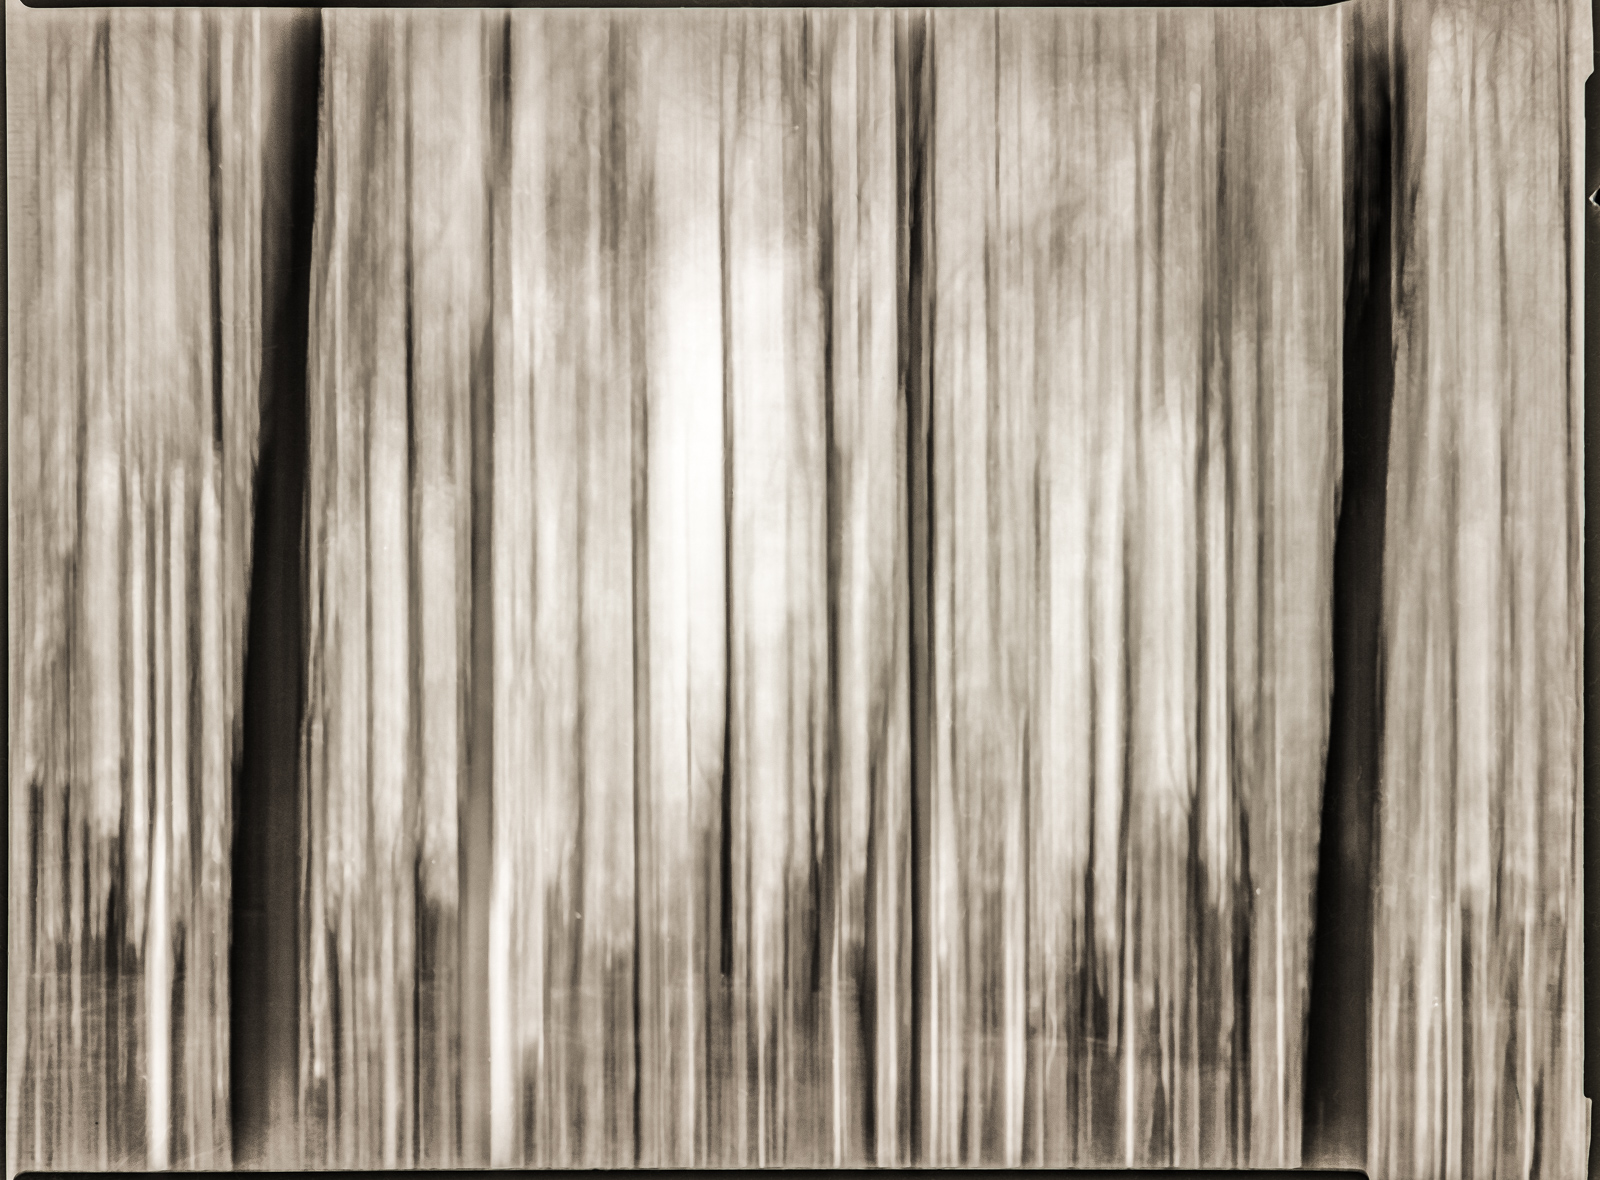 SchwarzWeißFoto: Zahlreiche unregelmäßige dunkle Linien verlaufen parallel von oben nach unten. Der Hintergrund ist oben hell und nach unten etwas dunkler.